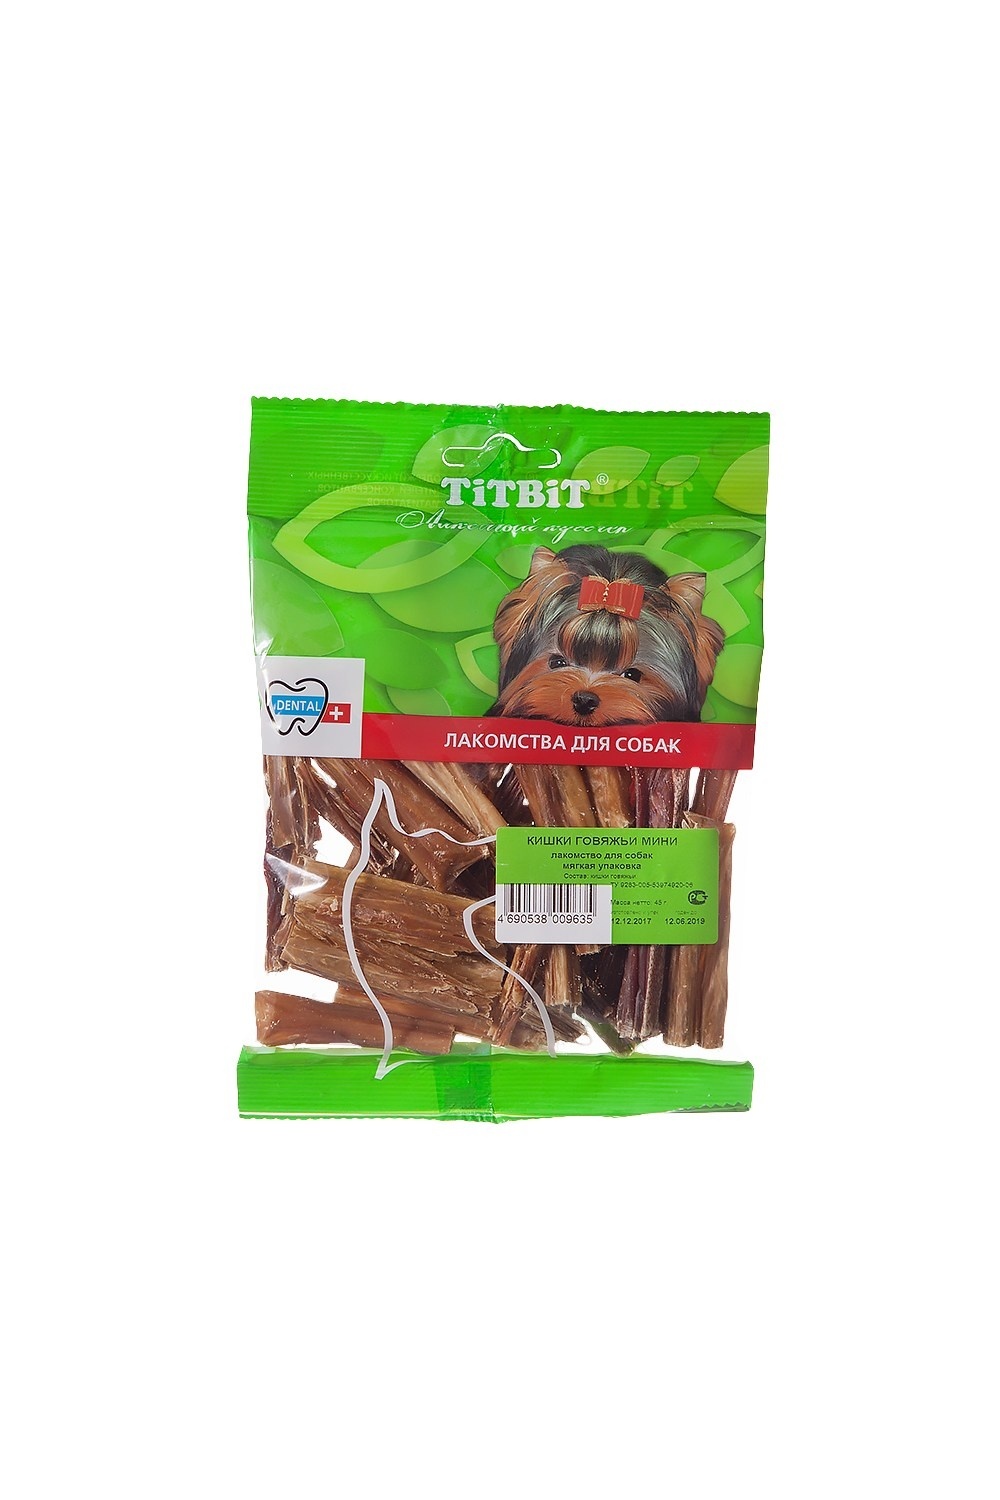 TiTBiT TiTBiT кишки говяжьи мини - мягкая упаковка (45 г) цена и фото